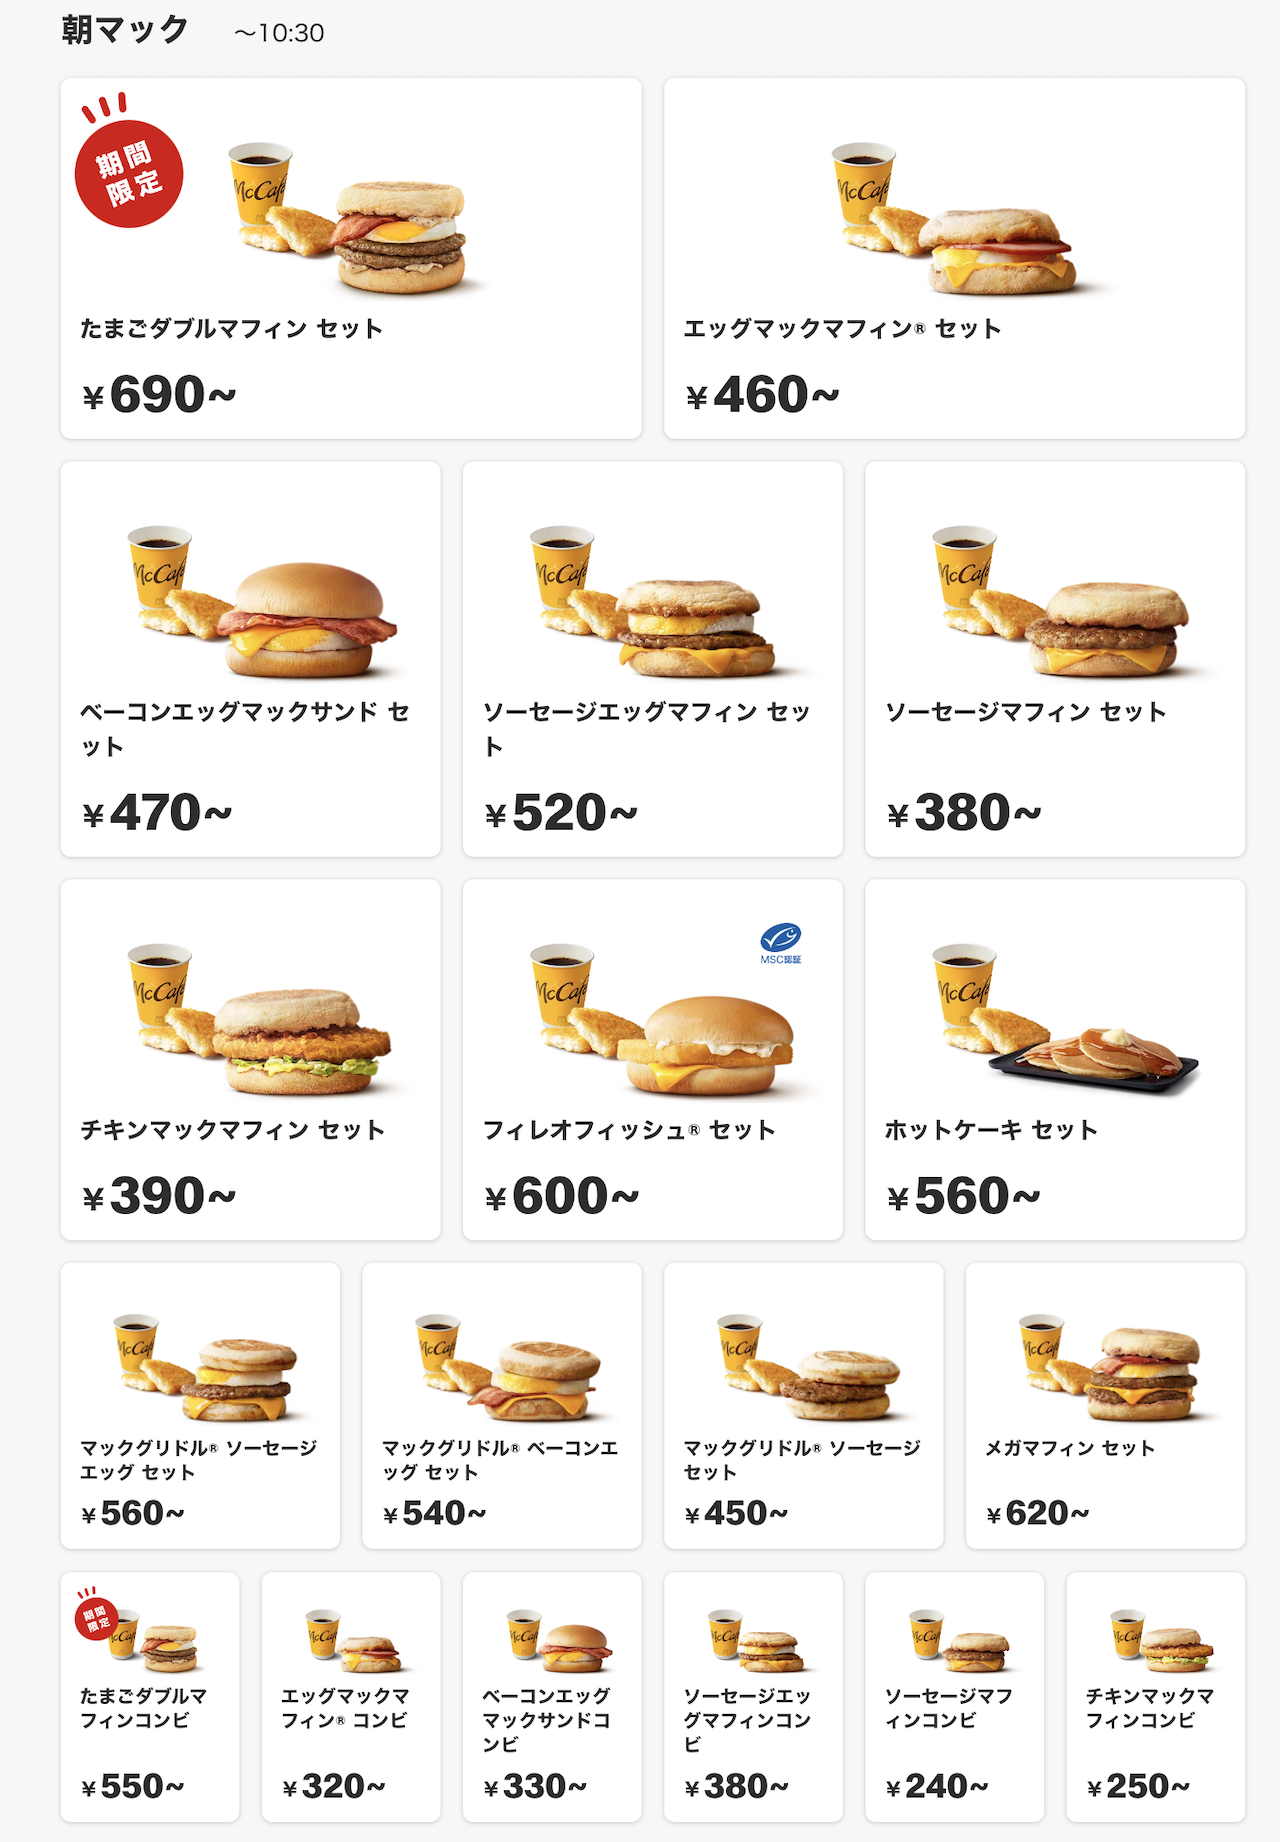 台灣吃不到的日本麥當勞鬆餅早餐”McGriddles”(日文：マックグリドル)